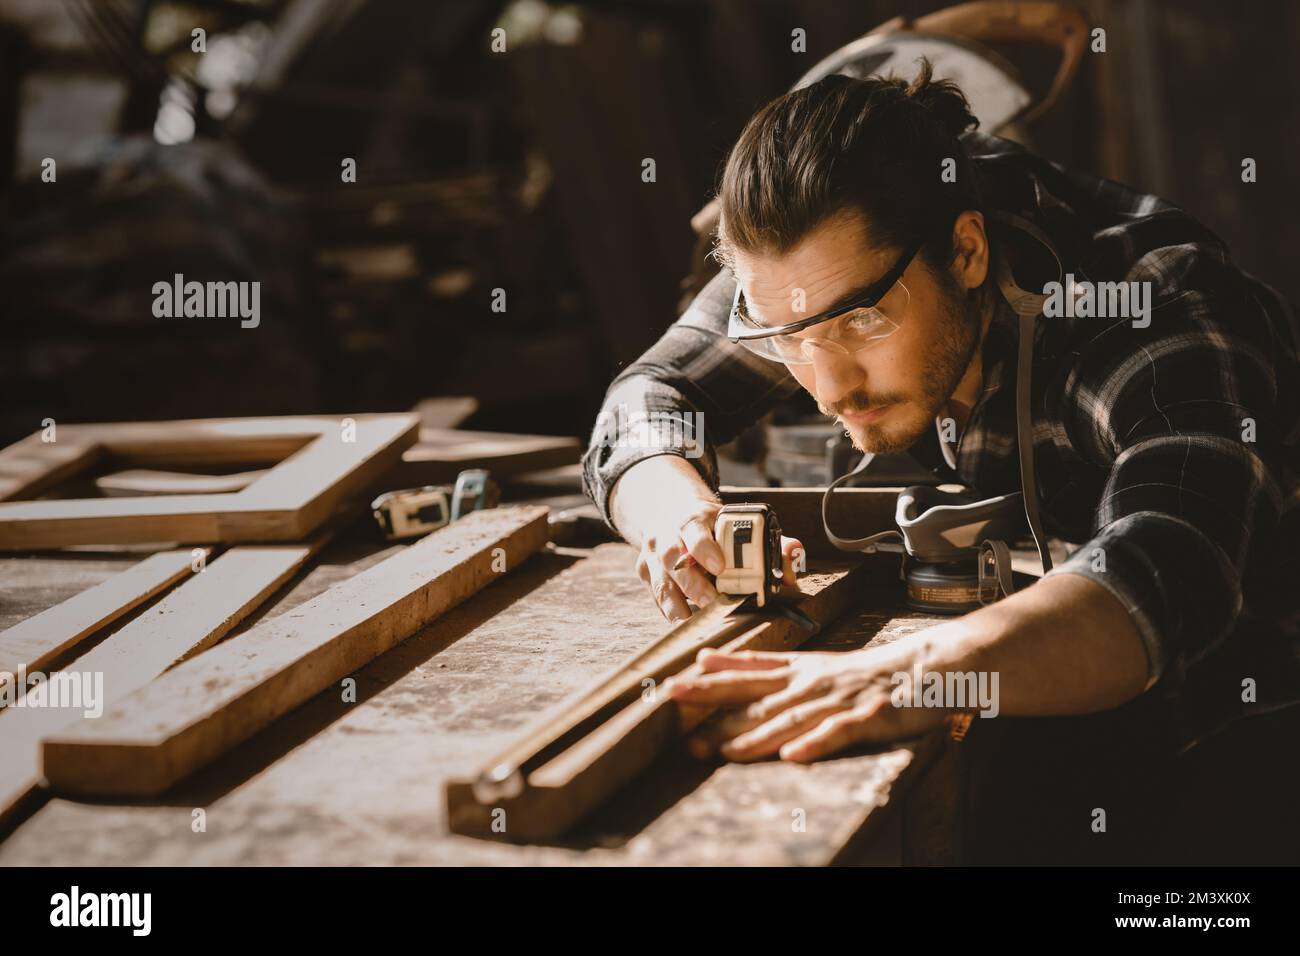 Zimmermann Möbel Kunsthandwerker handgefertigt Holzarbeiten in der Holzwerkstatt Stockfoto